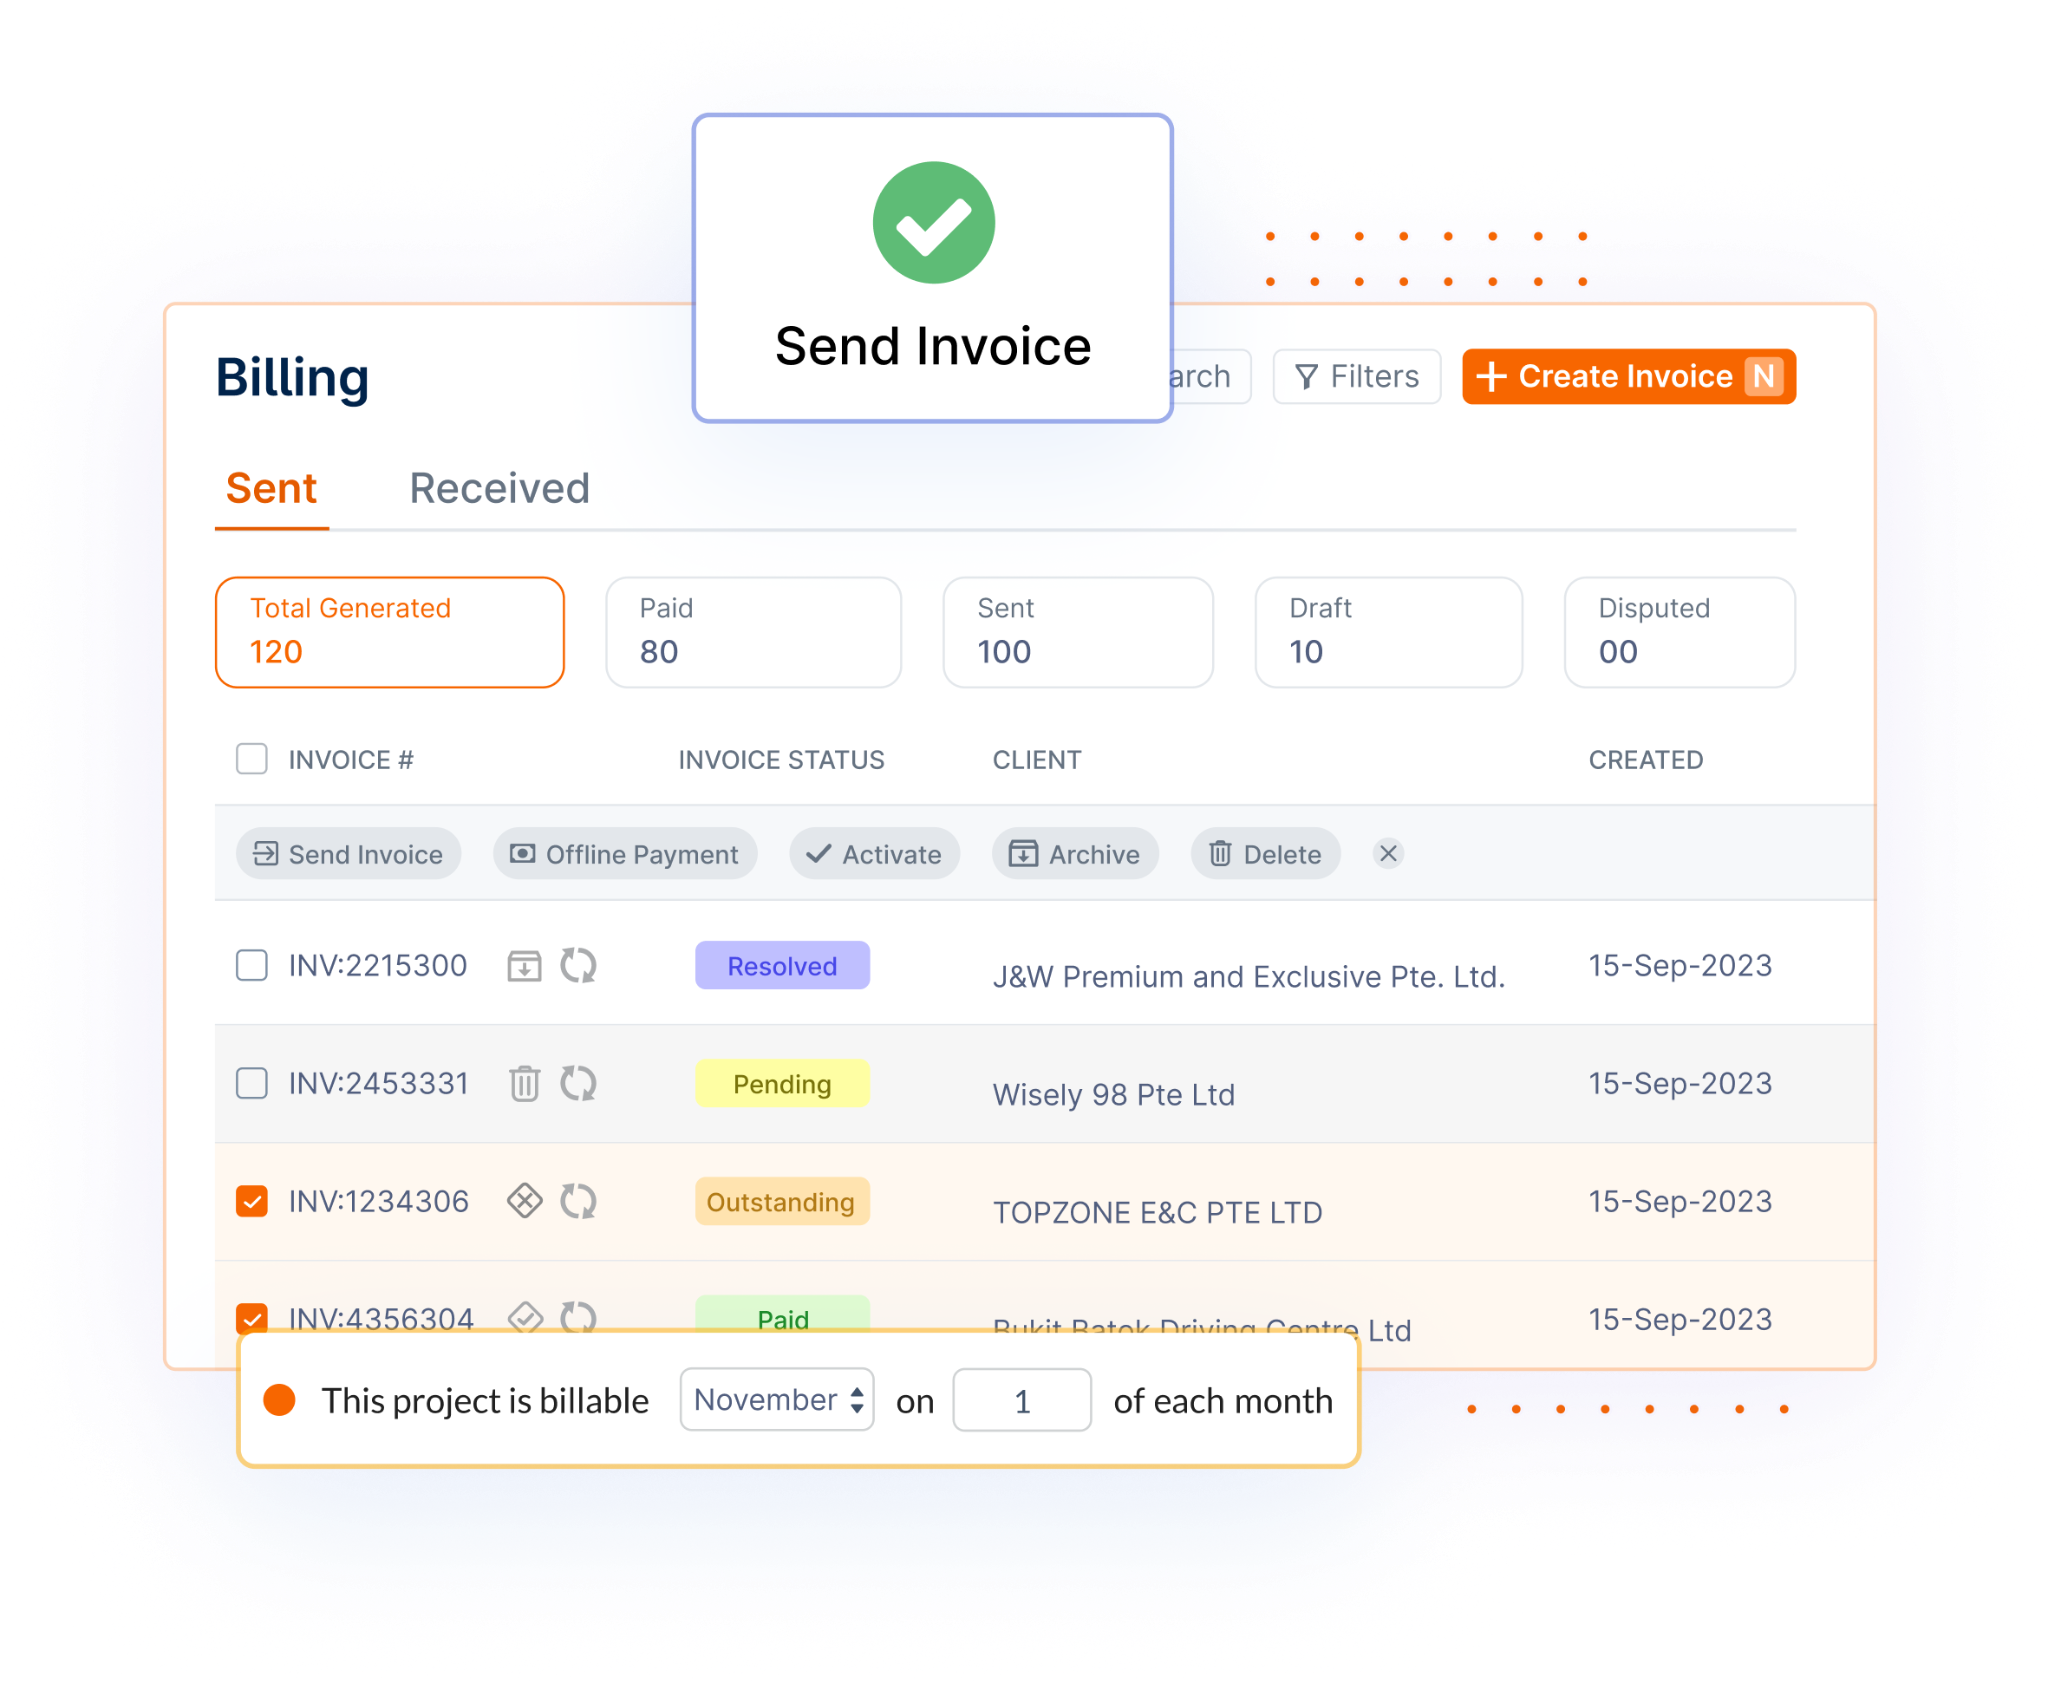 billing - send invoice